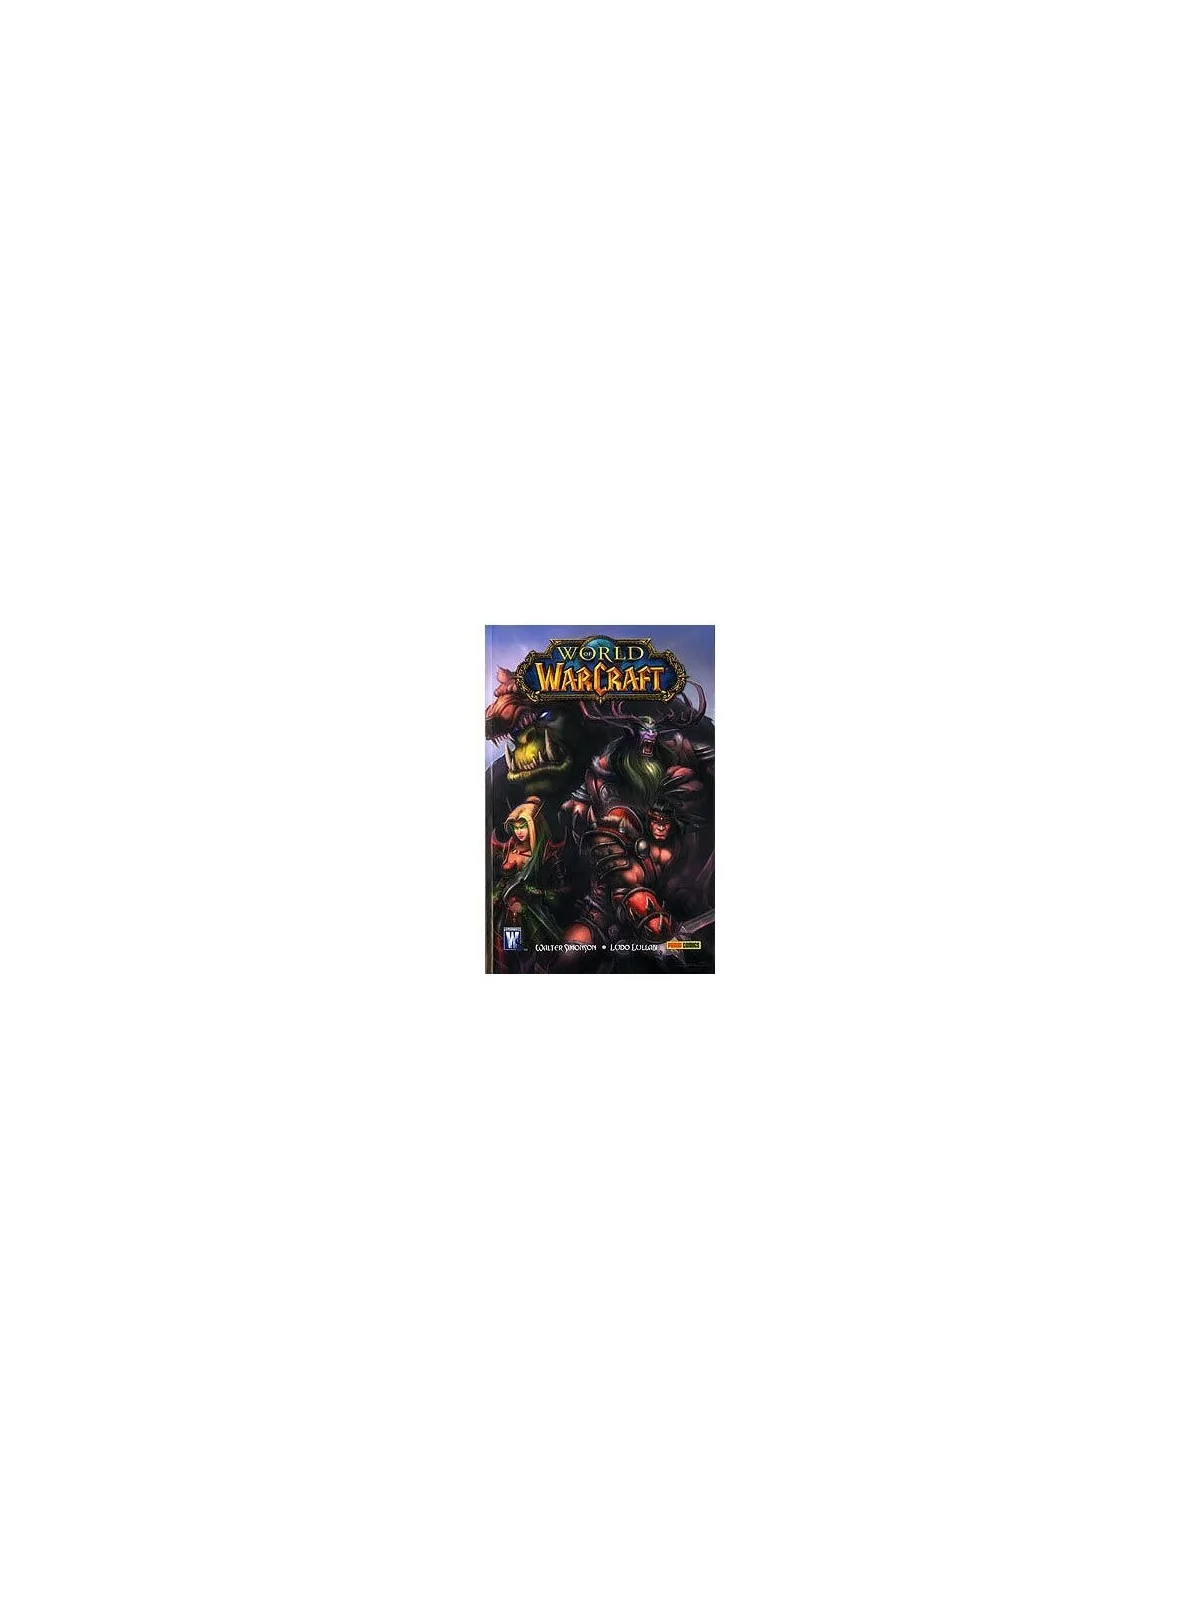 Comprar World of Warcraft 01 (Comic) barato al mejor precio 14,25 € de